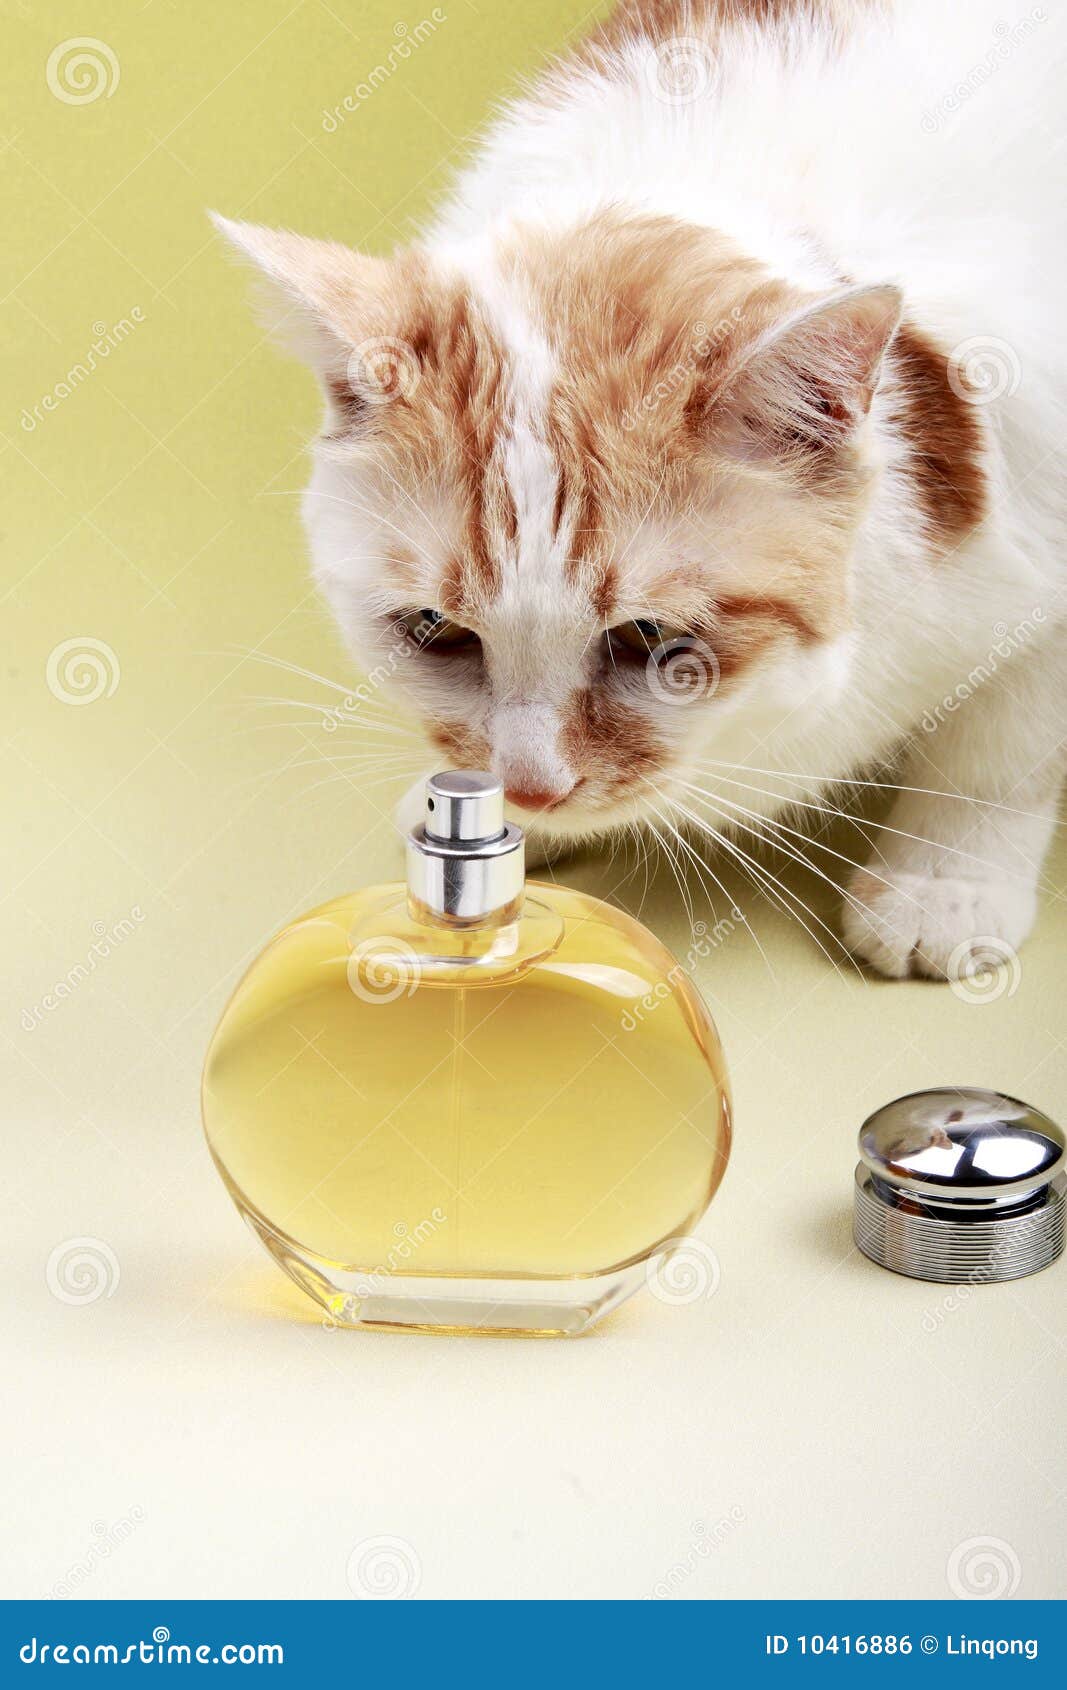 Katze und Duftstoff. Die Katze wird durch eine Flasche Duftstoff angezogen.